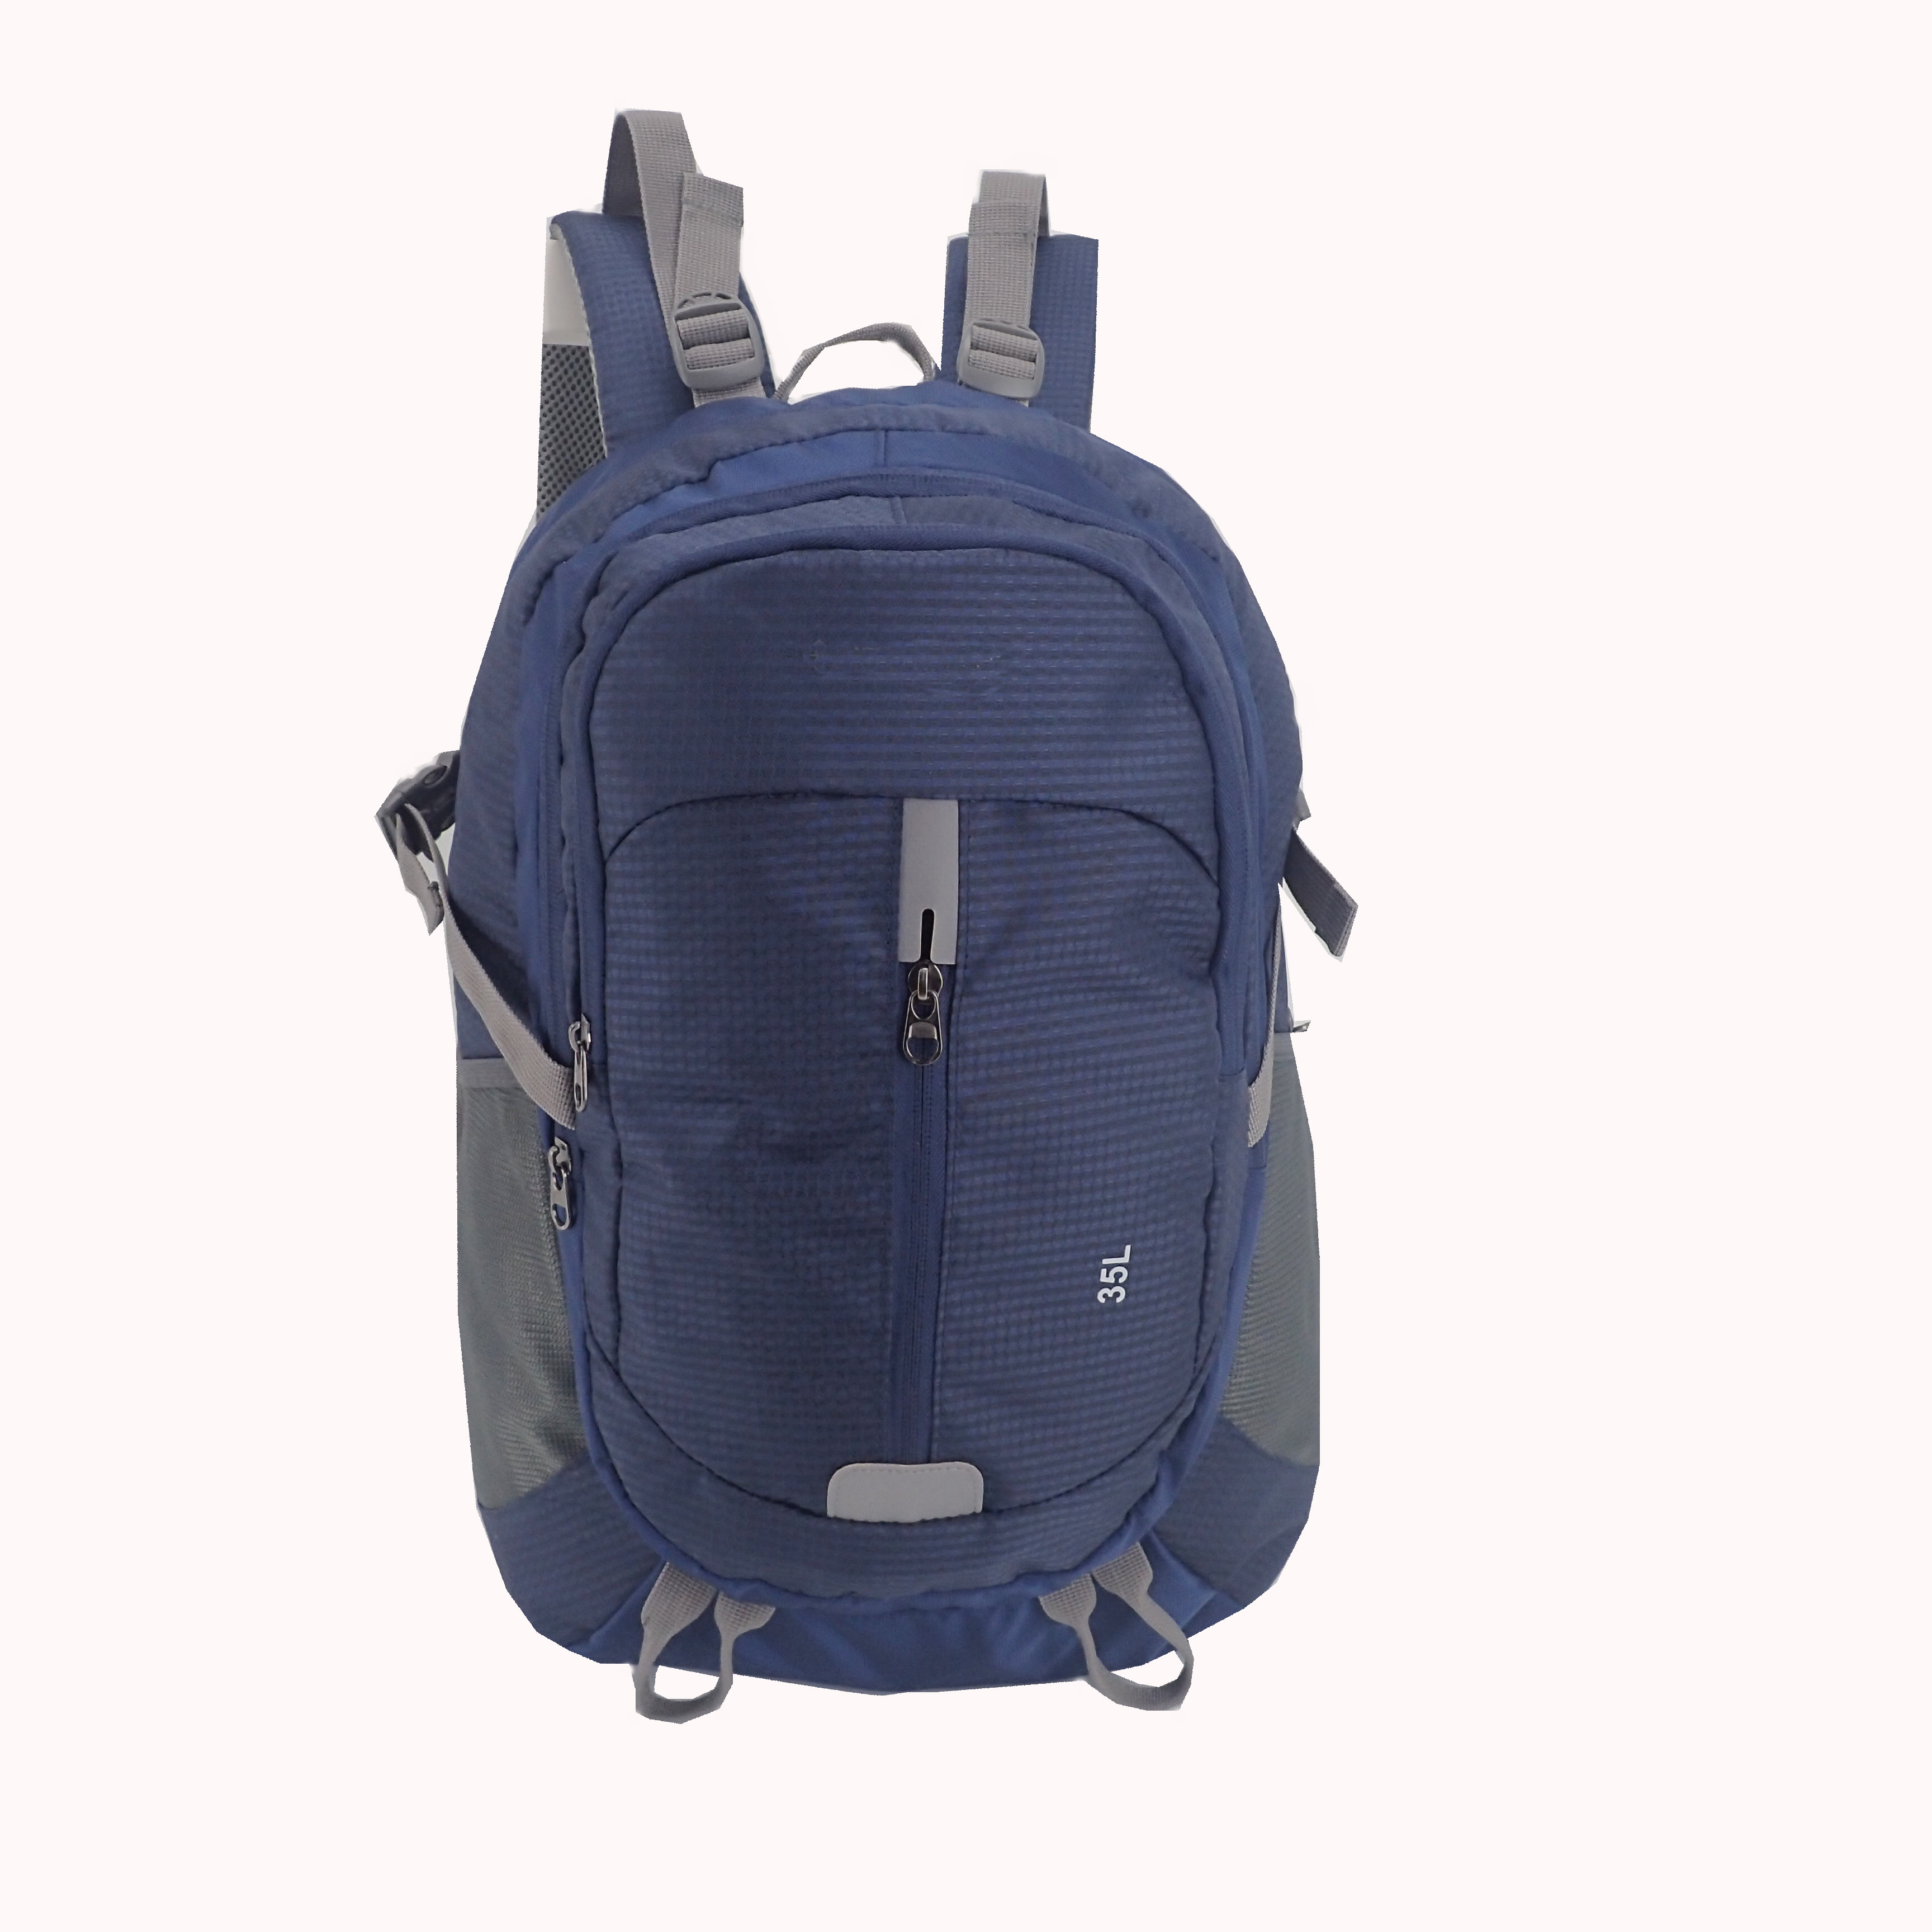 /43L/35L/28L outdoor backpack/leisure backpack/camping bag/hiking bag/fashion bag/yoga bag/travel bag/backpack/promotional bag/gift/sport bag